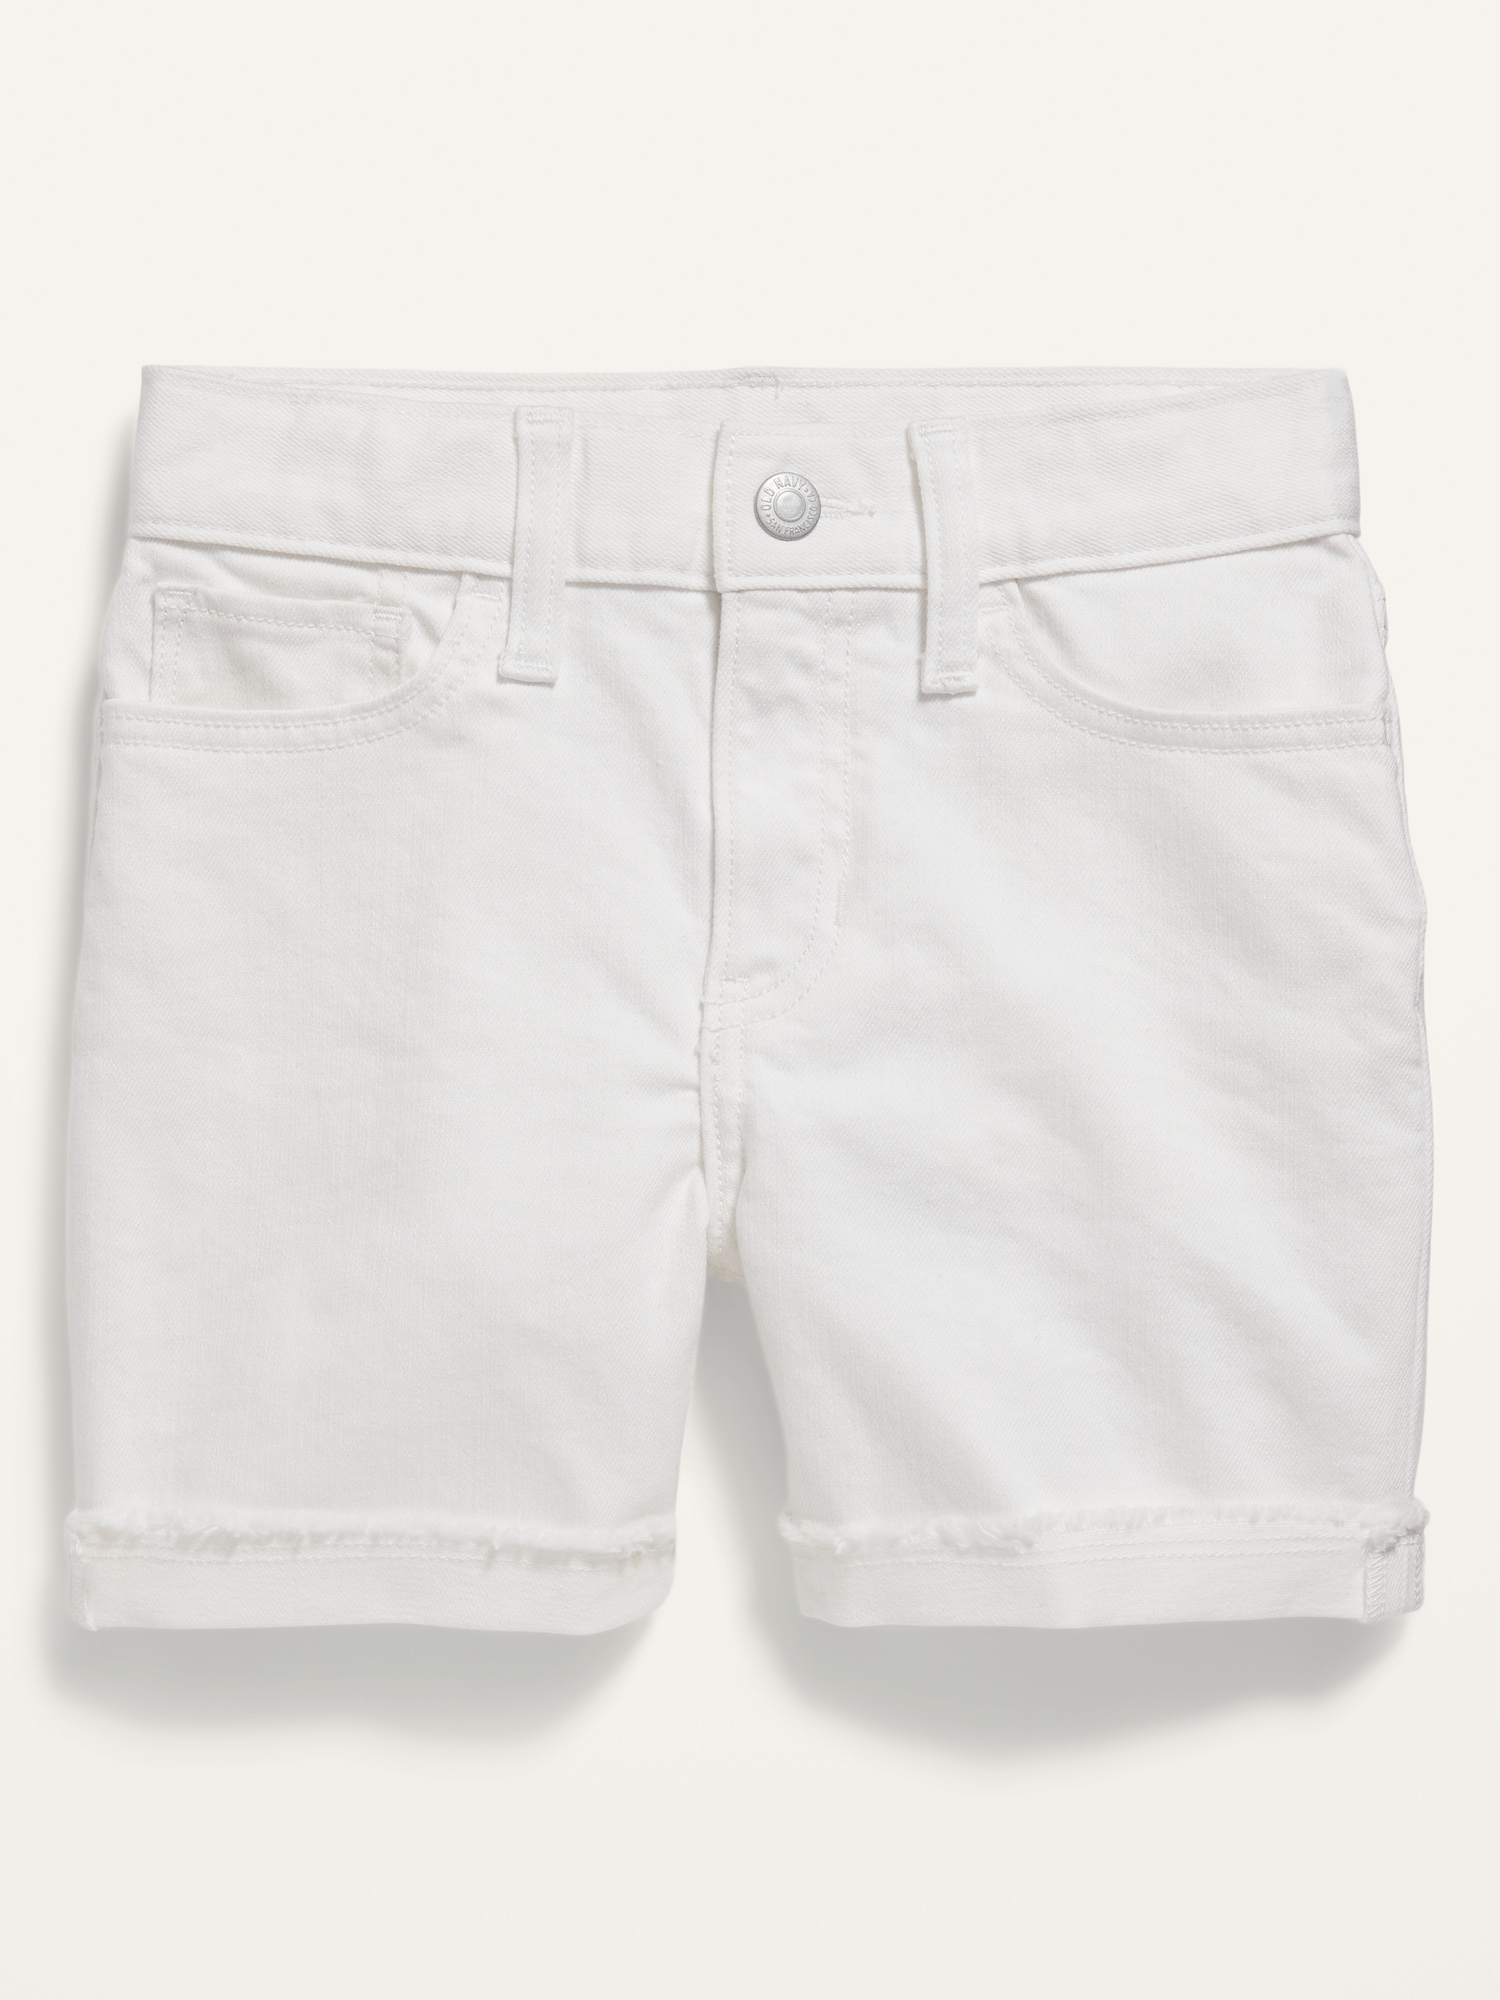 Fancy White Shorts | Old Navy